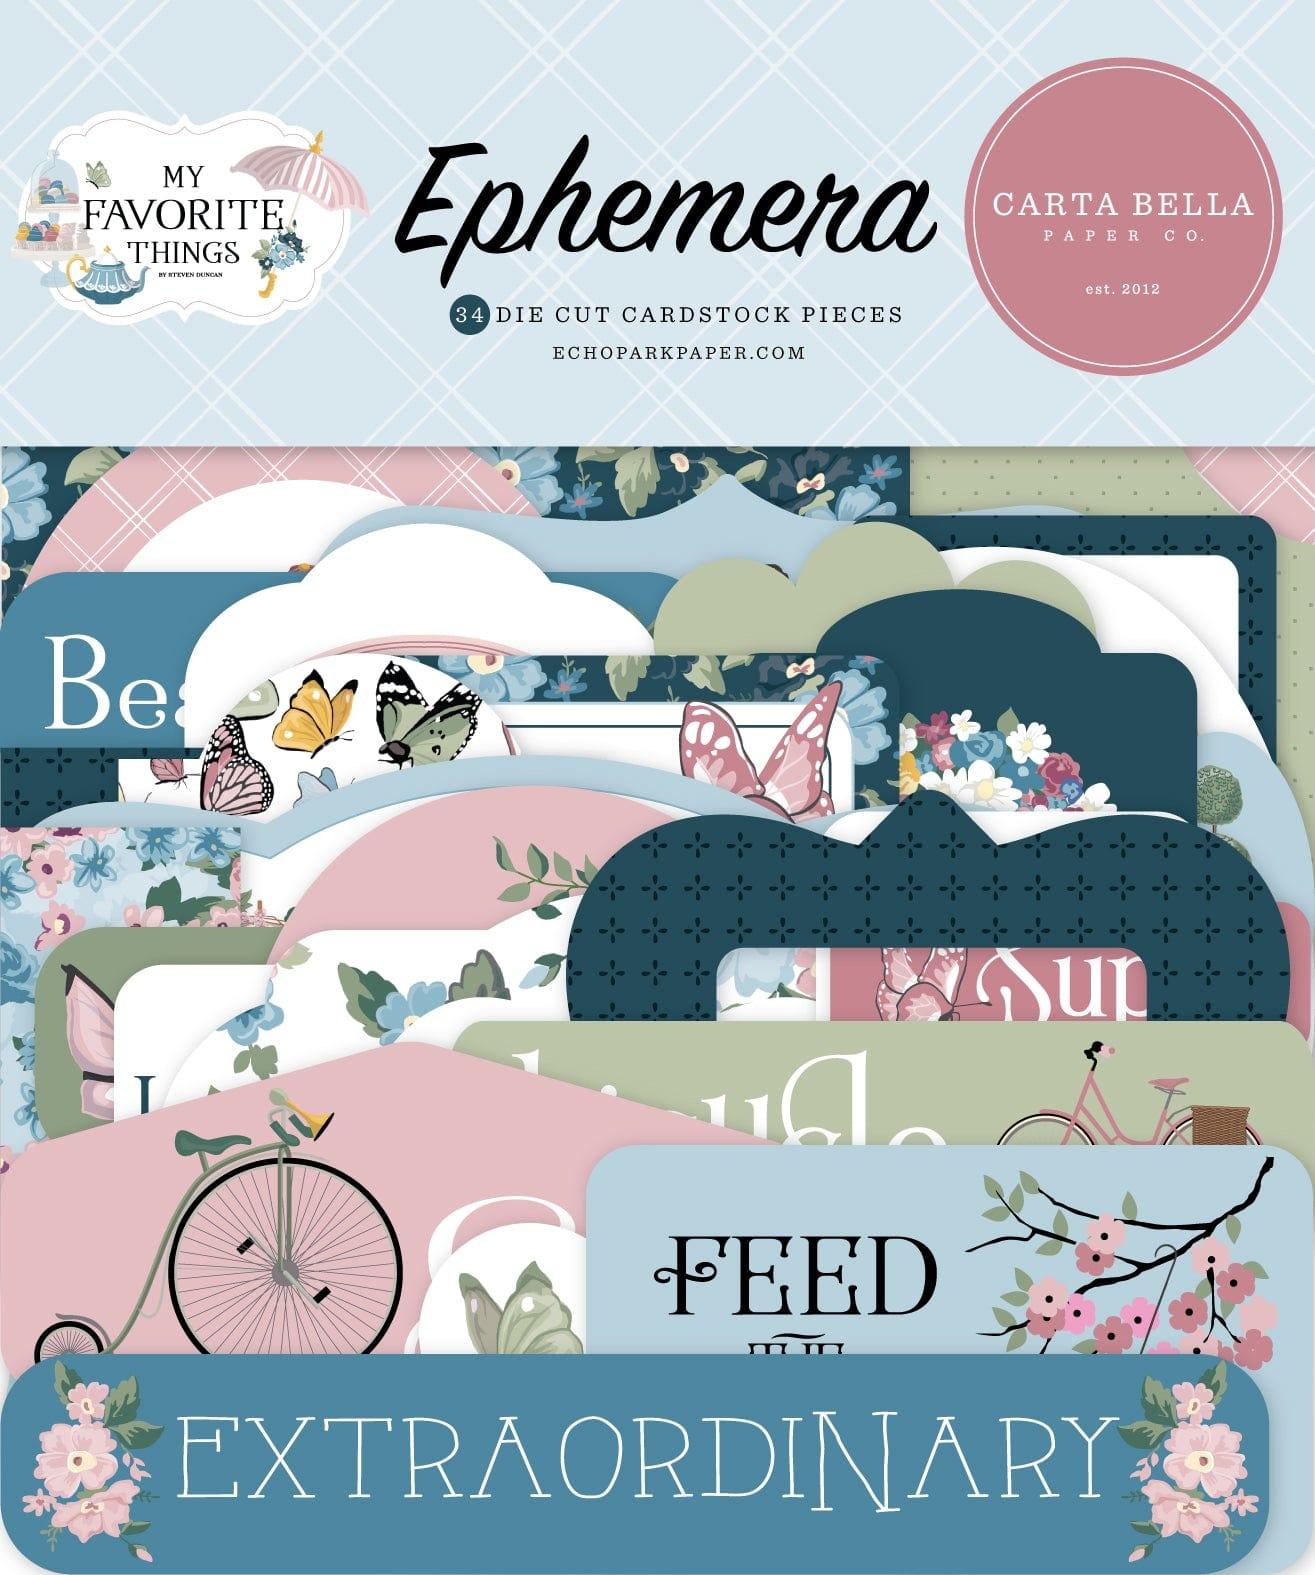 My Favorite Things Collection 5 x 5 Scrapbook Ephemera Die Cuts by Carta Bella